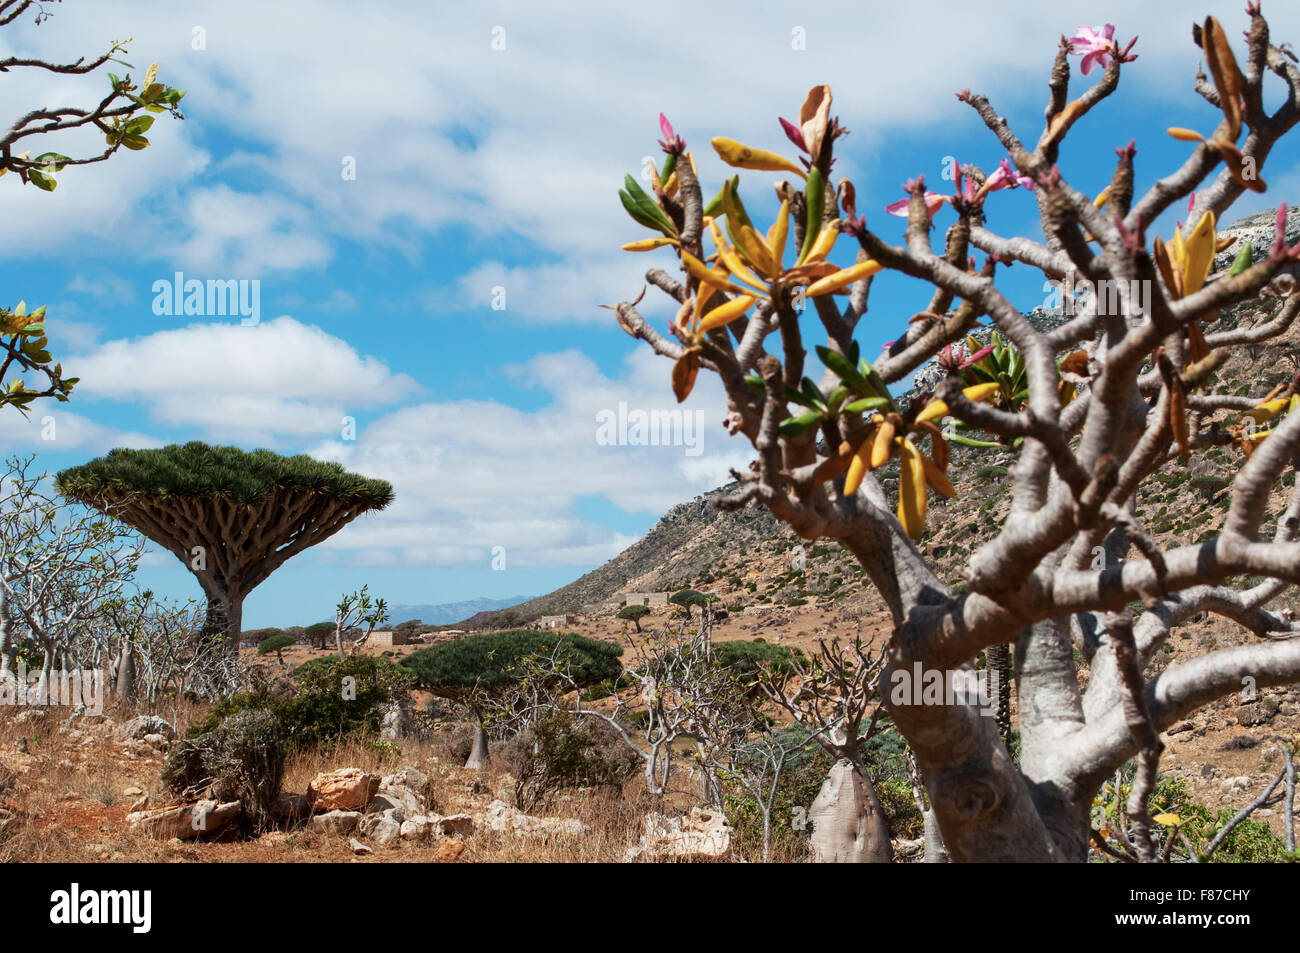 Alberi bottiglia panoramica con sangue di drago della foresta di alberi in background, altopiano Homhil e Socotra, Yemen Foto Stock